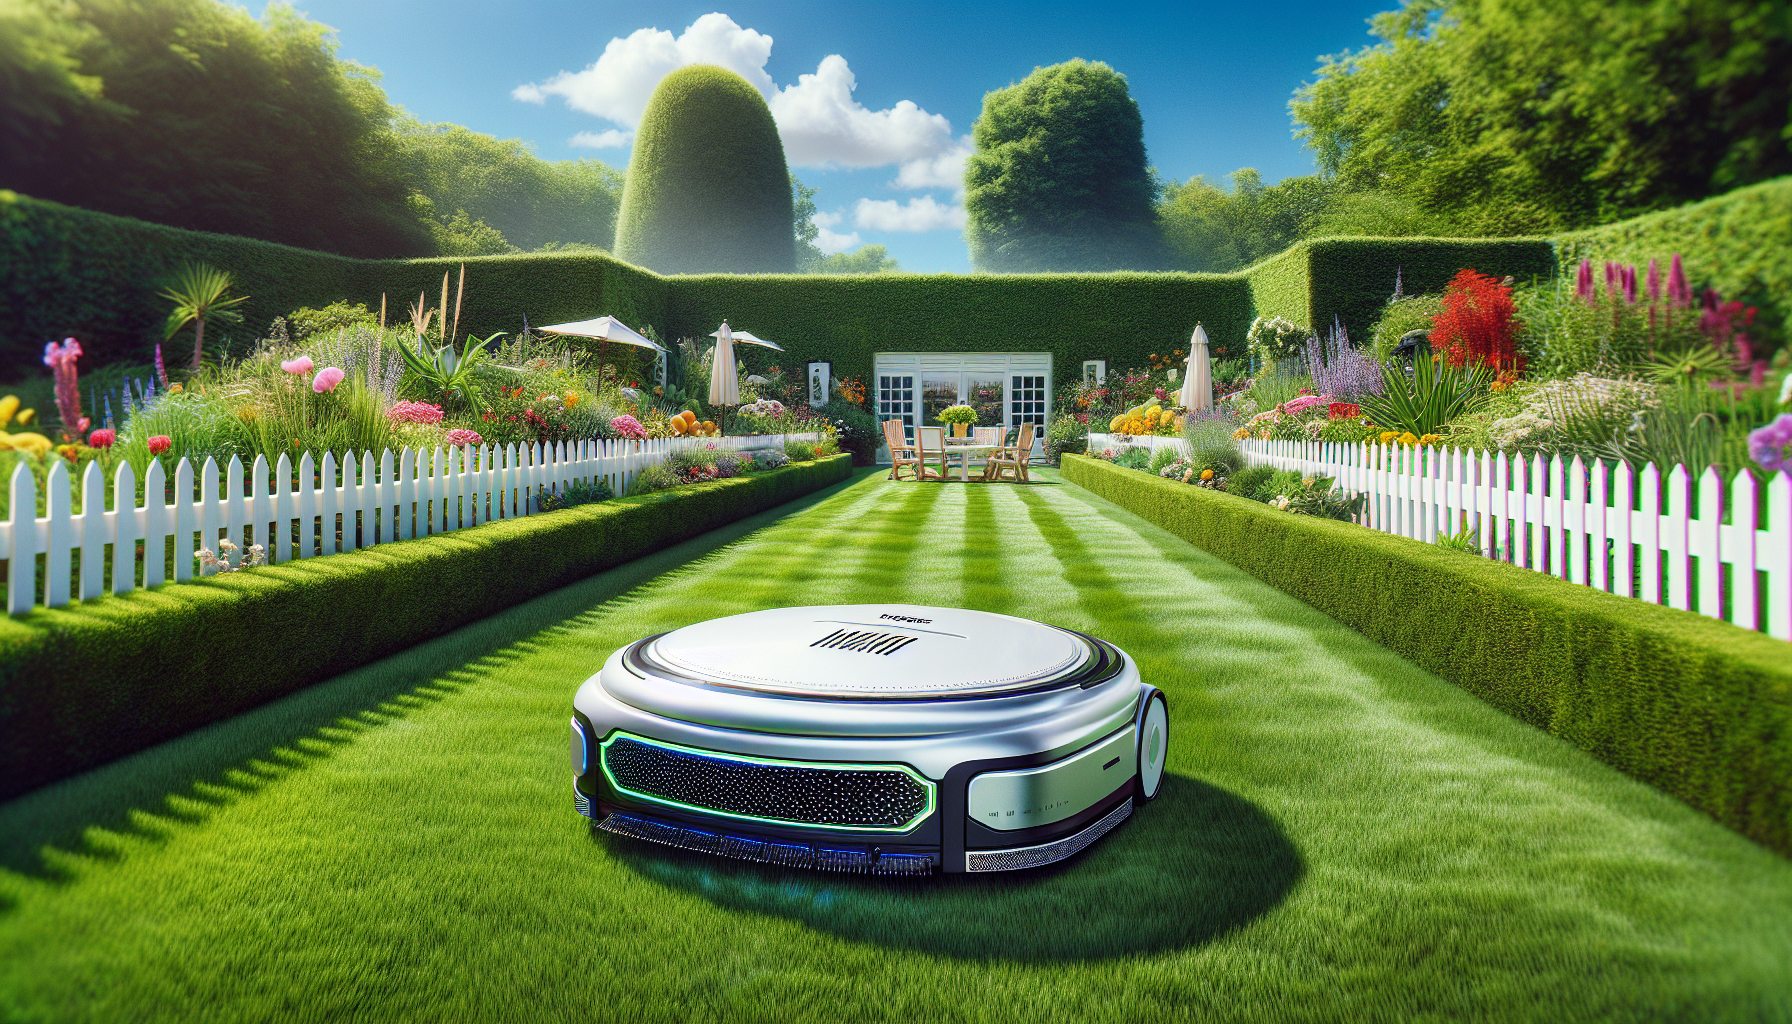 découvrez le lidl robot tondeuse, la solution efficace pour entretenir votre jardin et obtenir une pelouse impeccable ! avec ses fonctionnalités avancées, la tonte devient un jeu d'enfant.